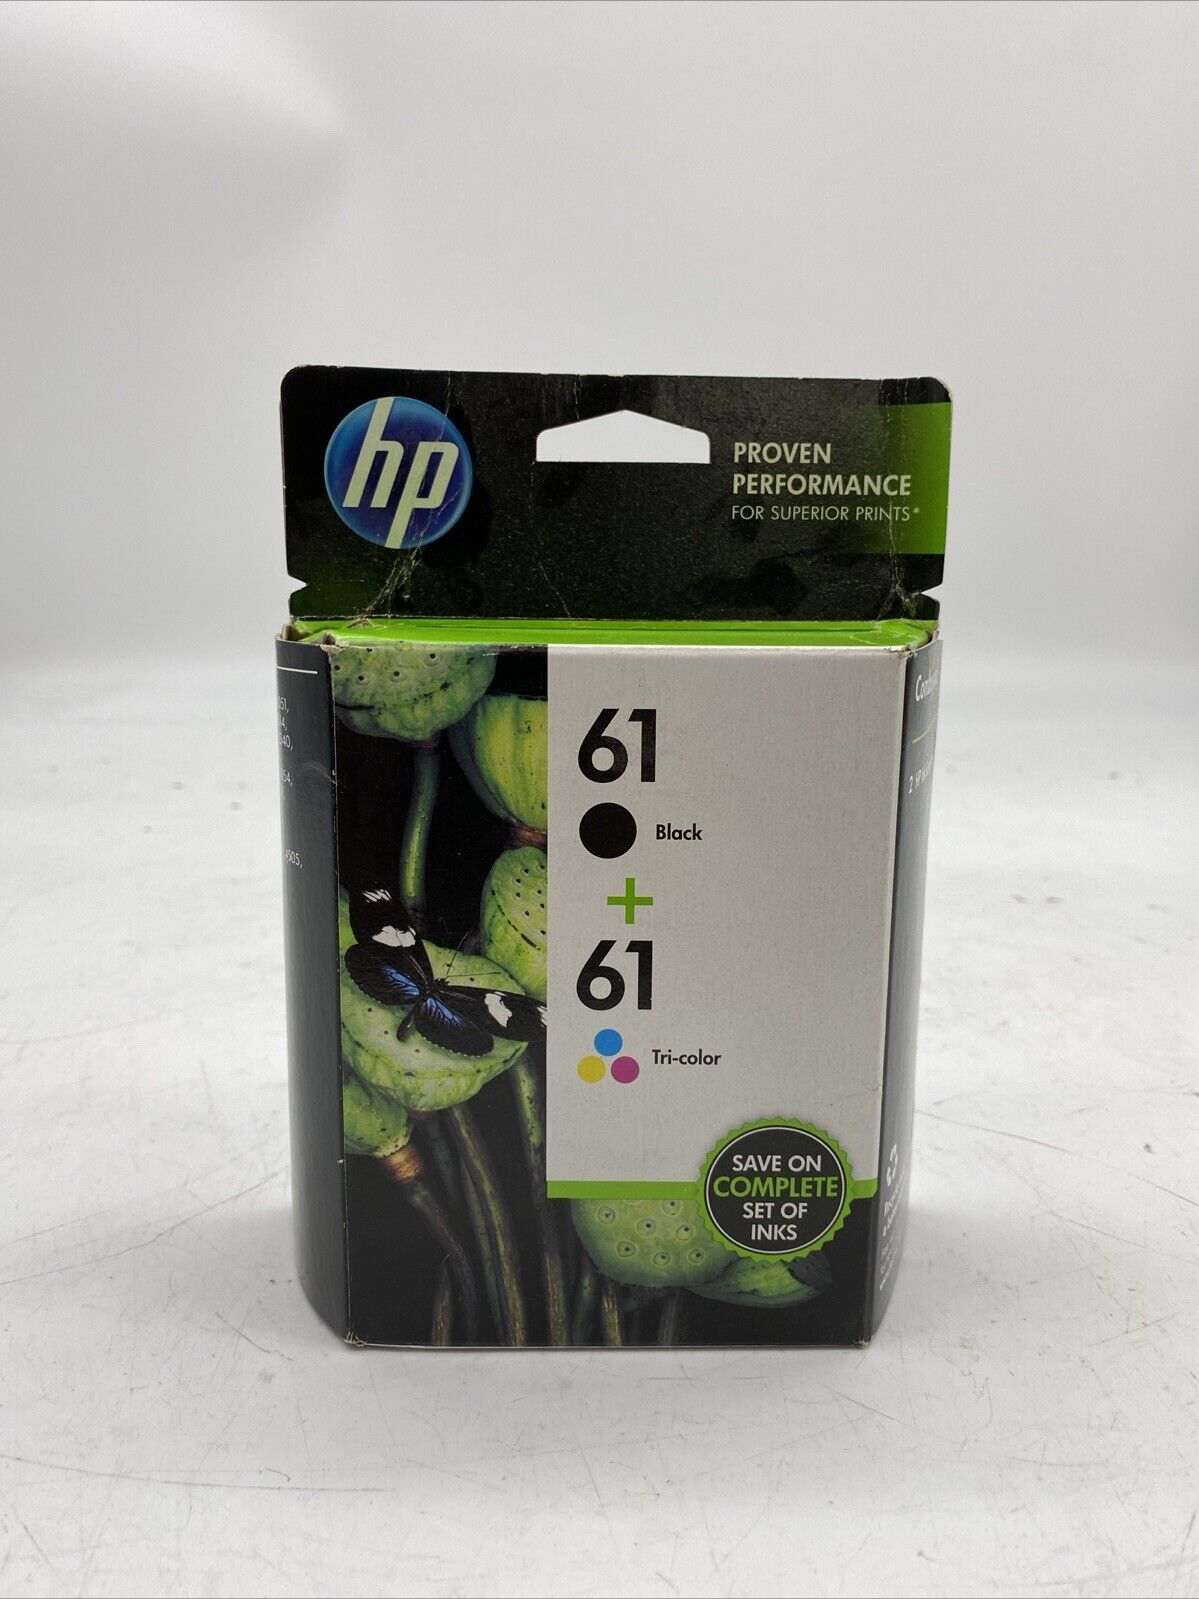 2 pack Genuine HP 61 Black Ink Cartridges Sealed Box